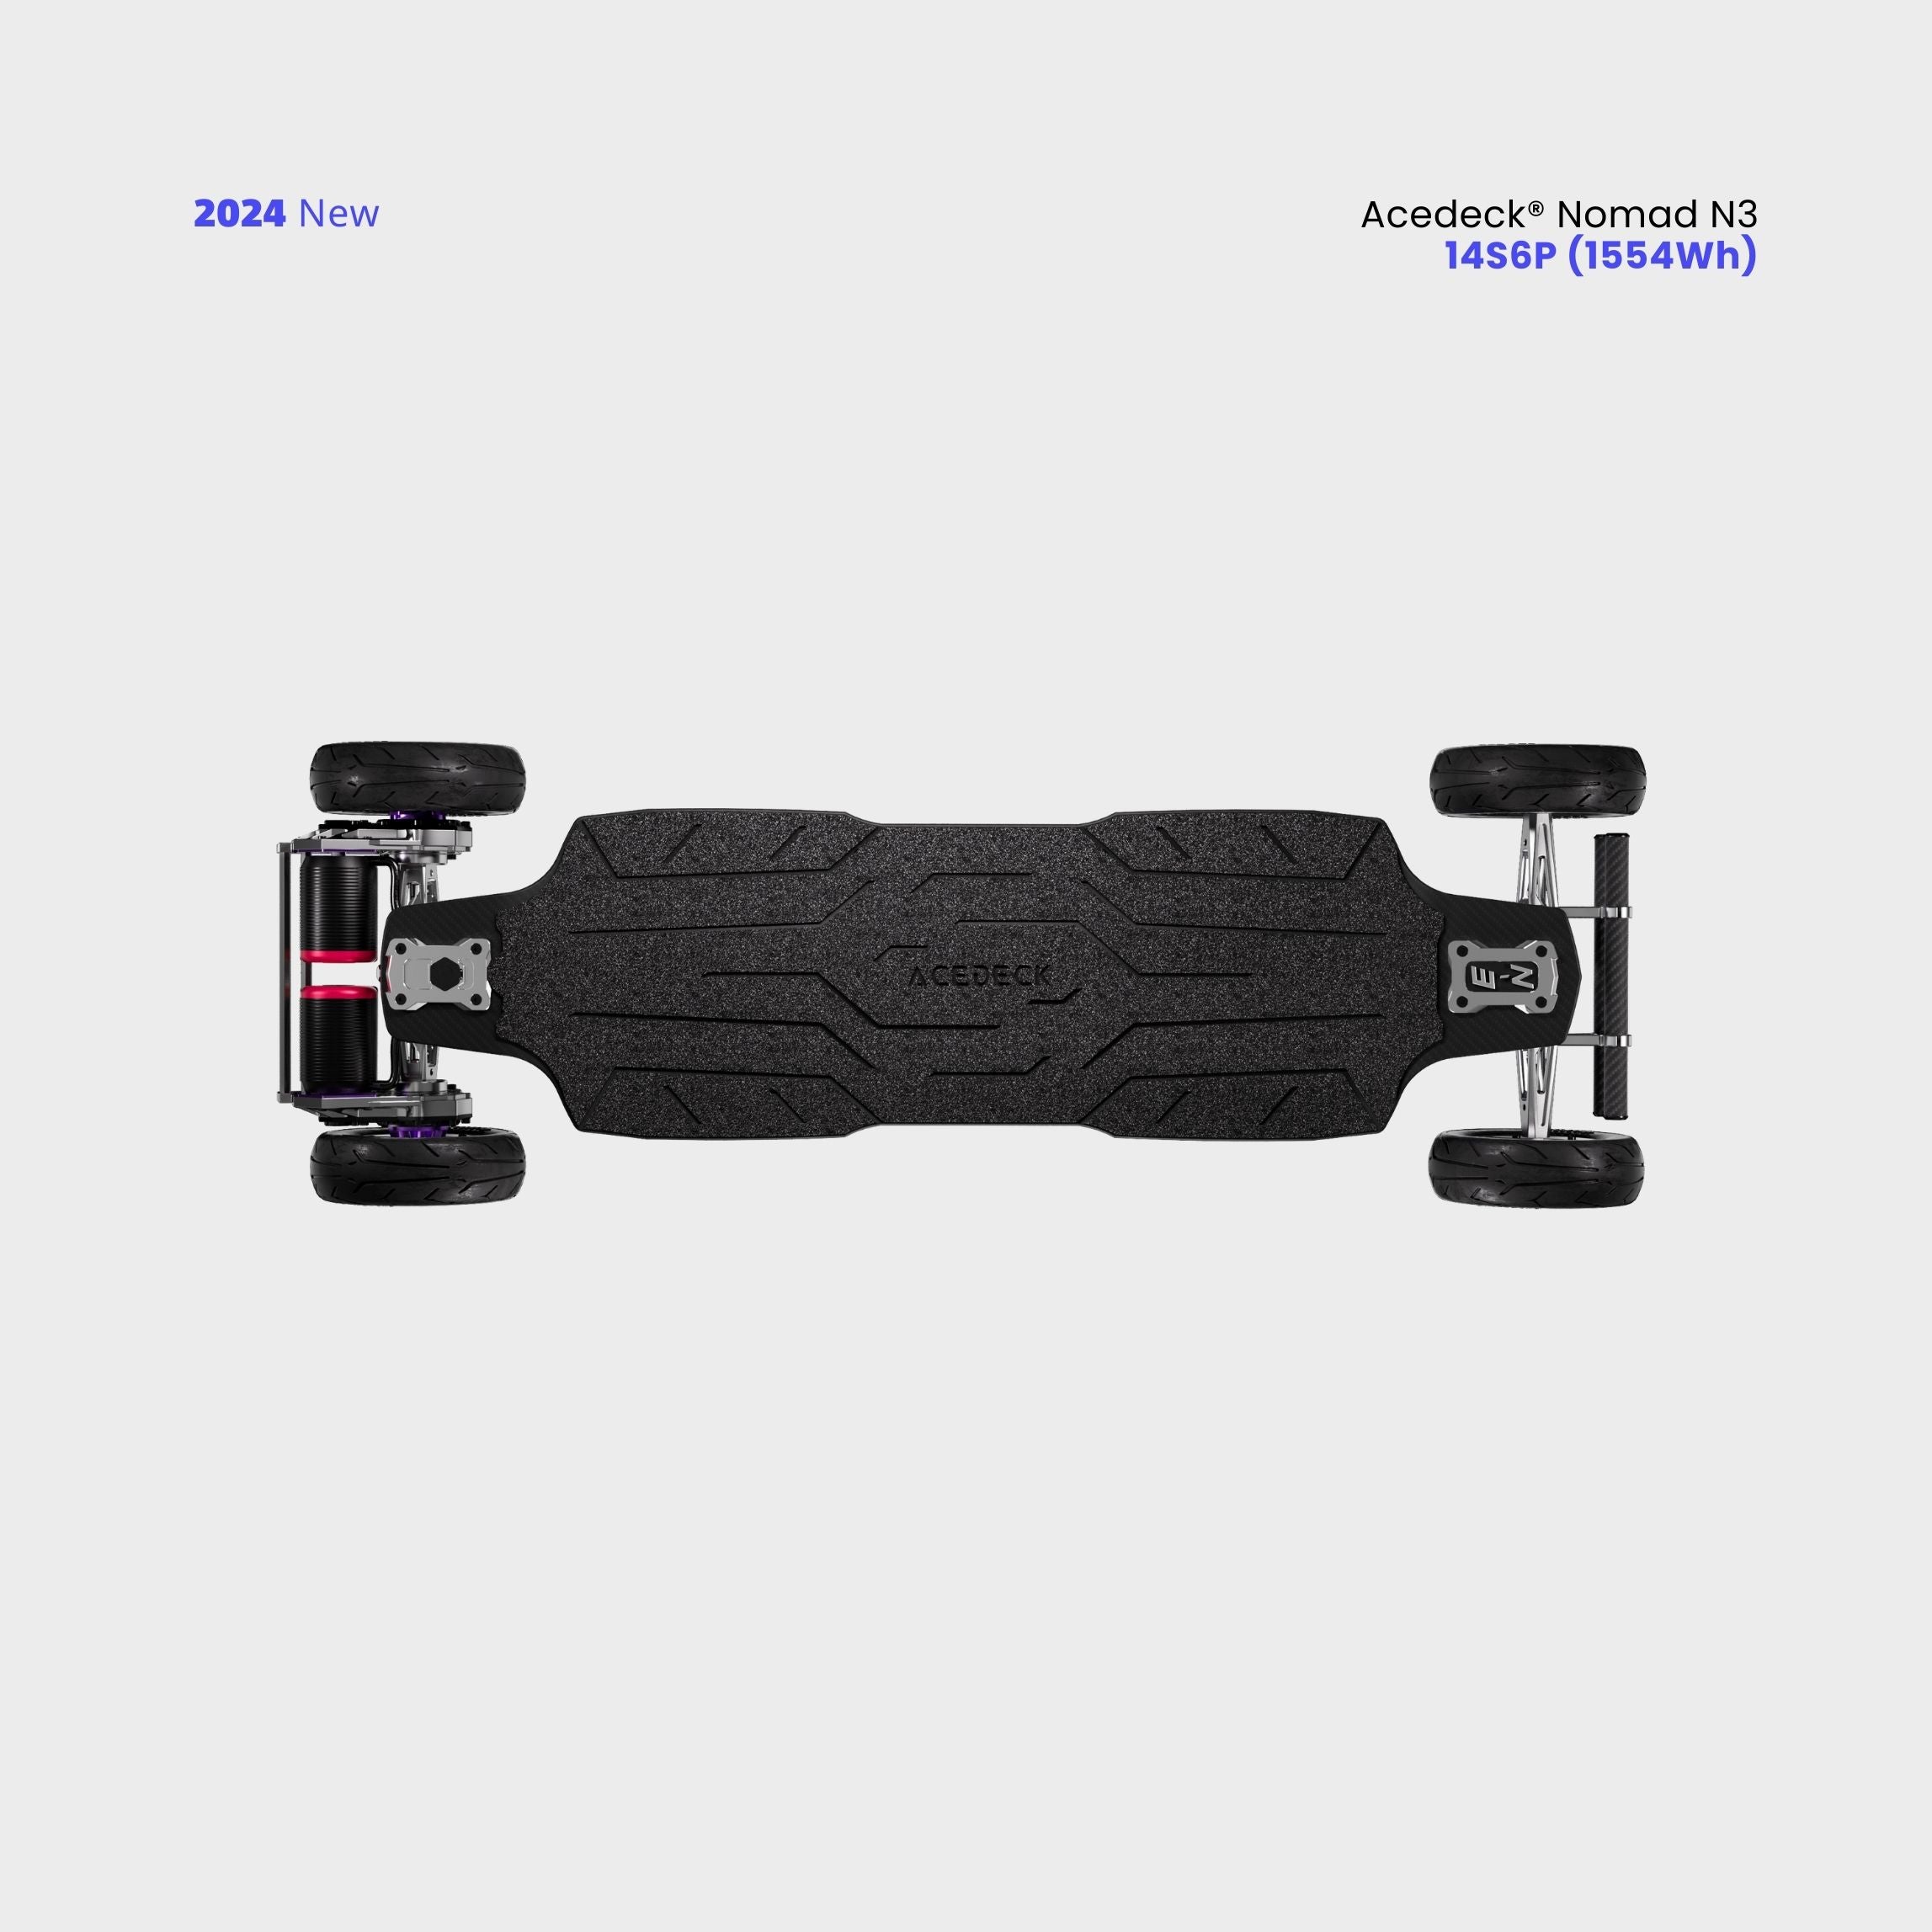 Acedeck® Nomad N3 Electric Skateboard